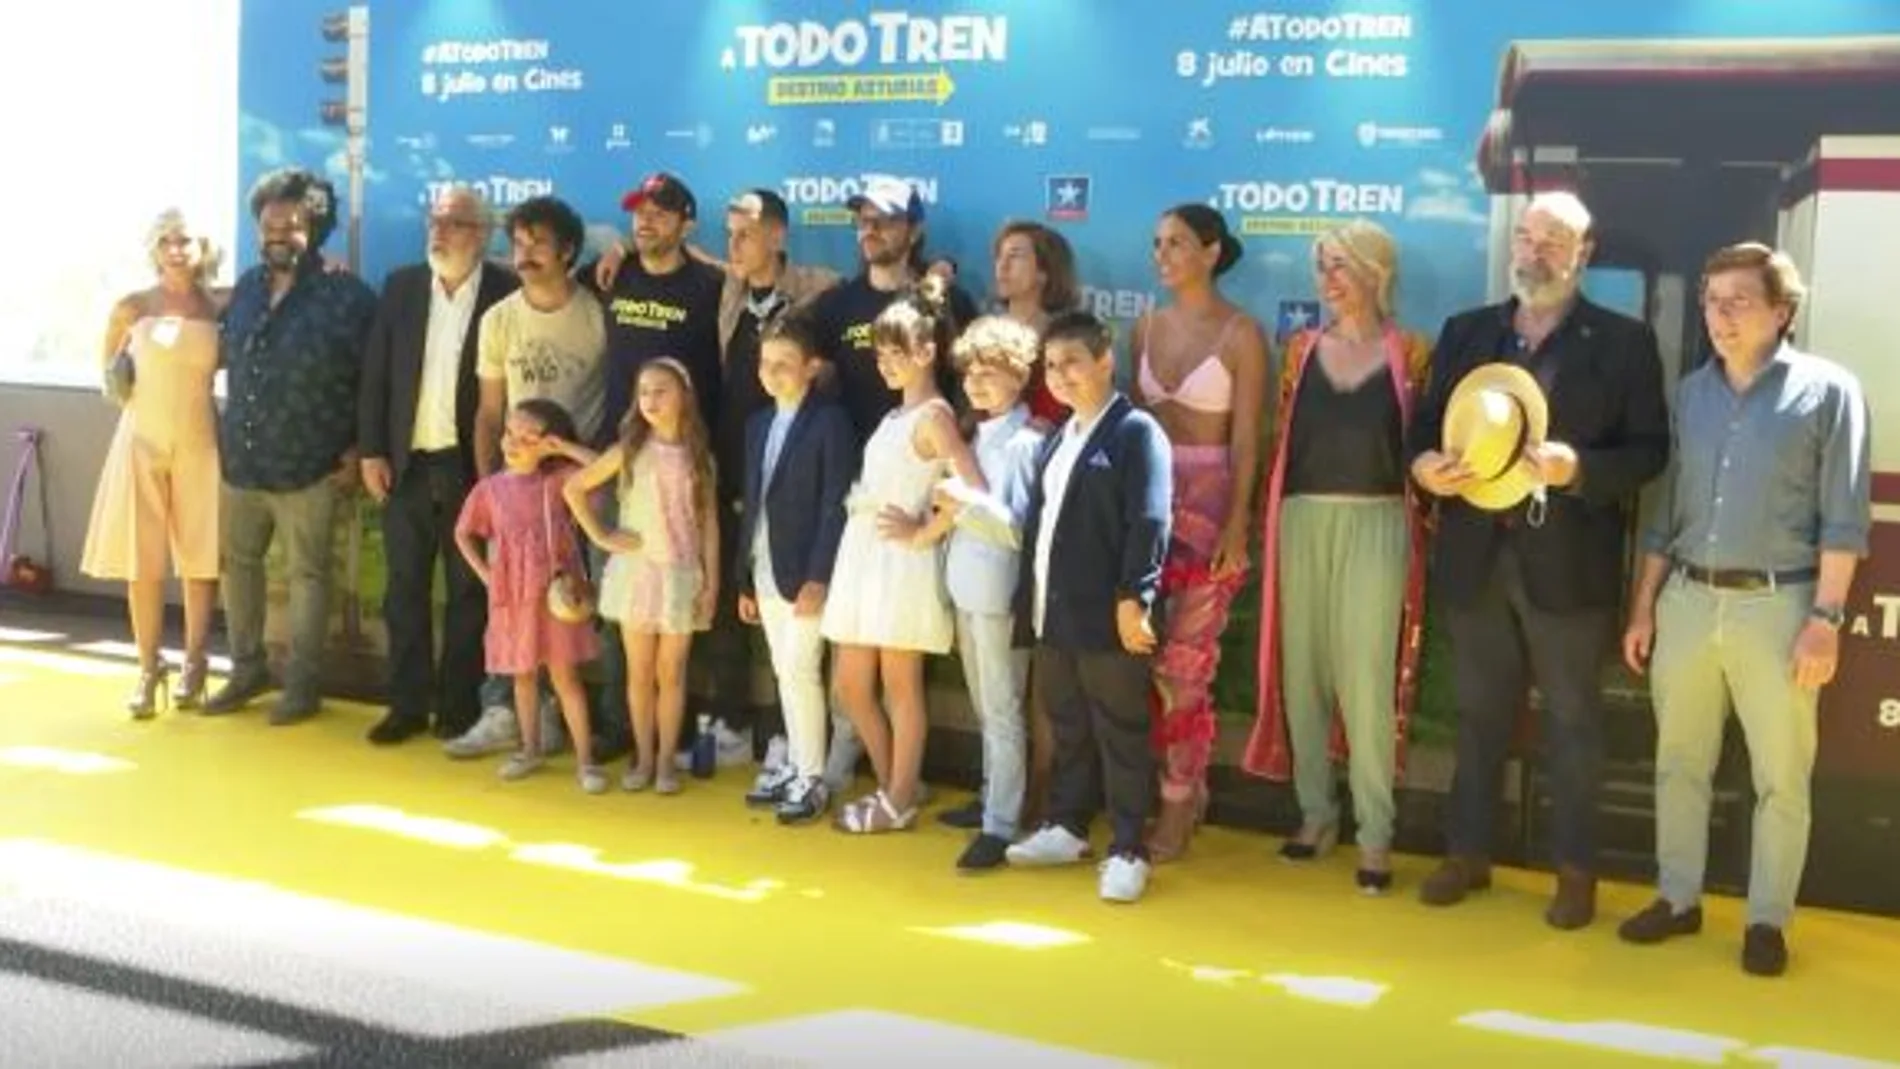 '¡A todo tren! Destino Asturias' La nueva comedia de Santiago Segura llega a los cines